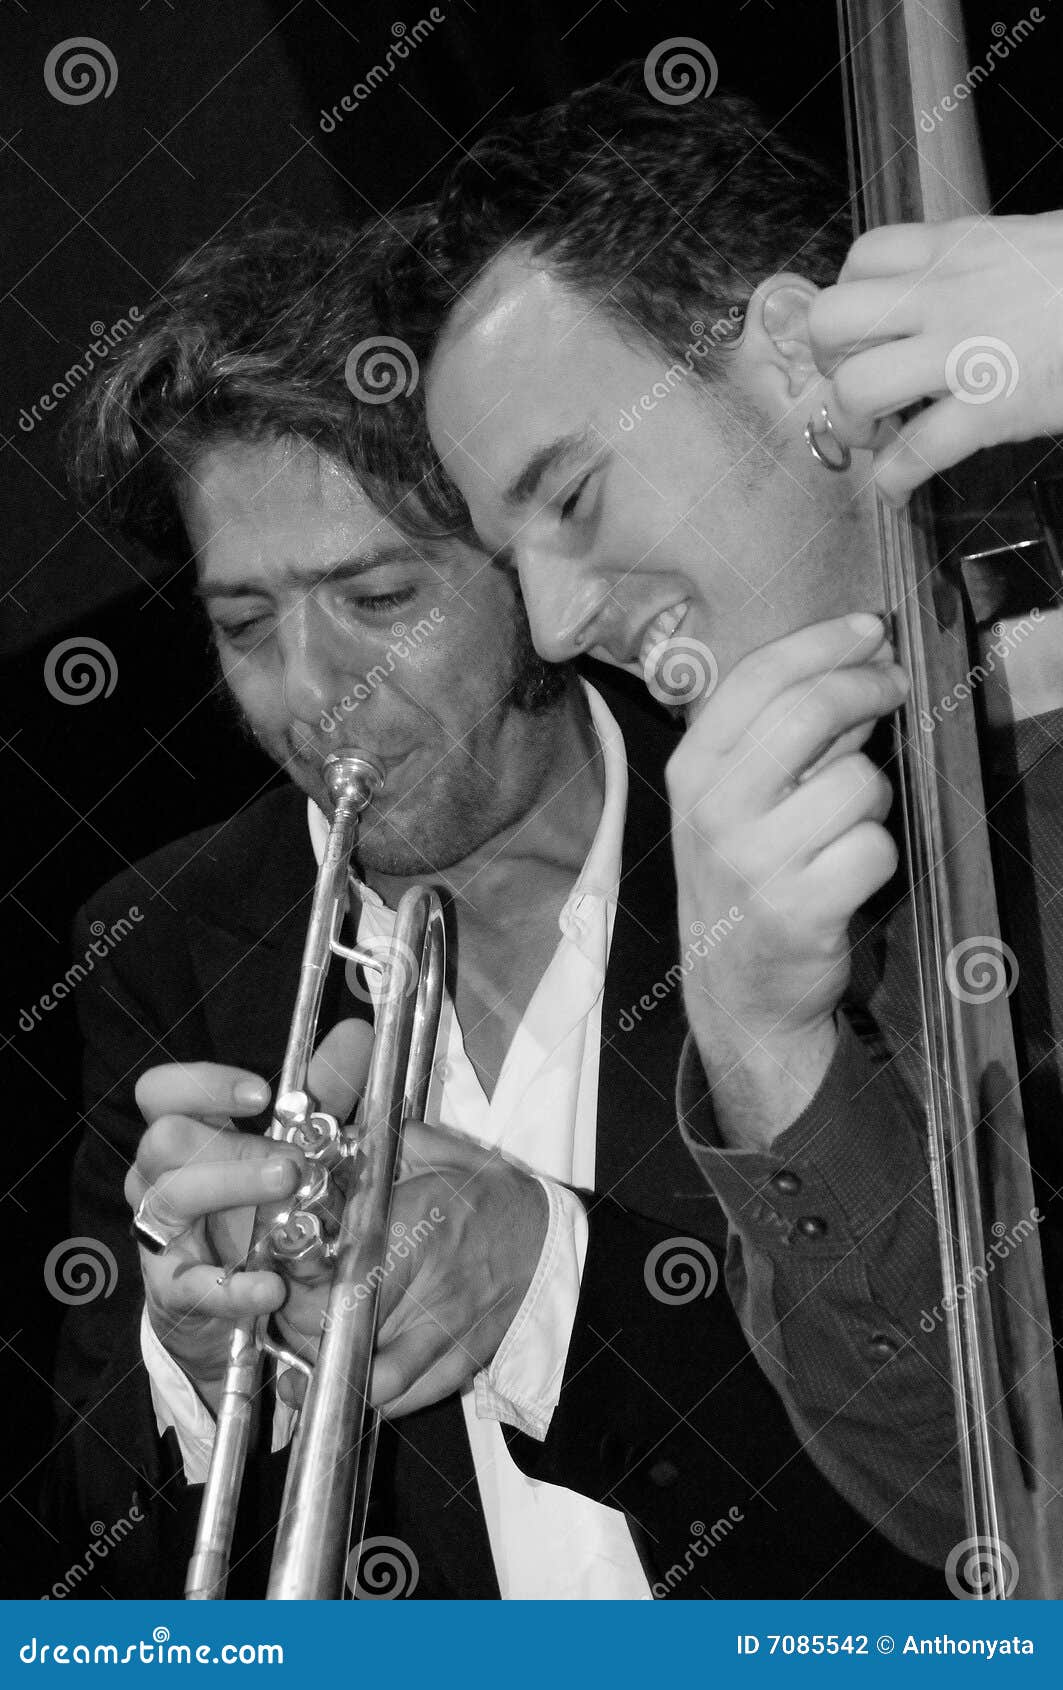 trumpet & bass jam